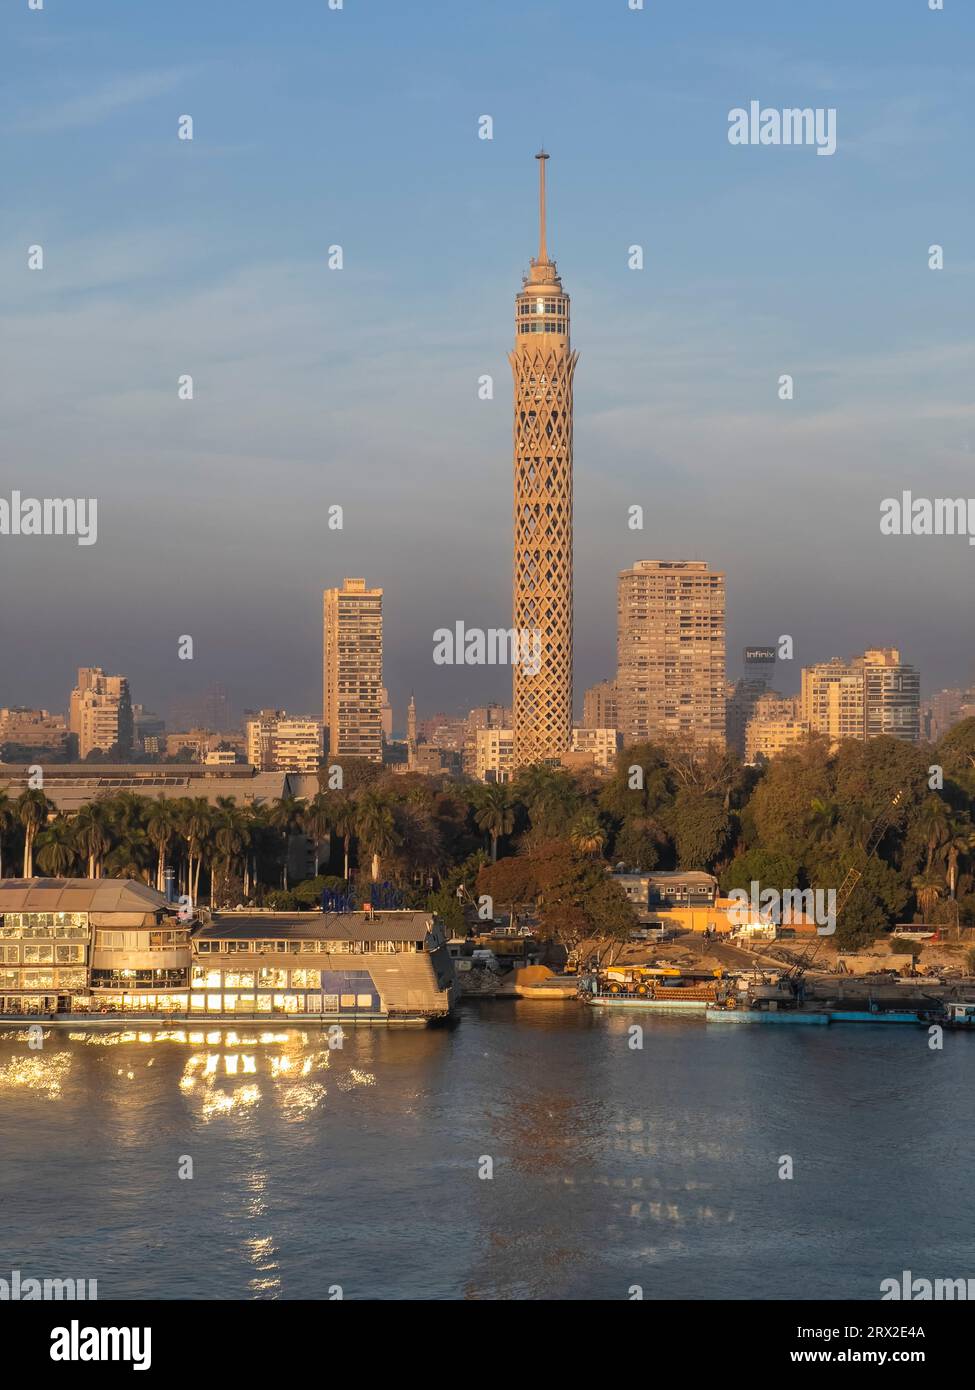 Der Kairo-Turm, das höchste Gebäude in Ägypten und Nordafrika, ragt 187 Meter hoch, der Nil, Kairo, Ägypten, Nordafrika, Afrika Stockfoto